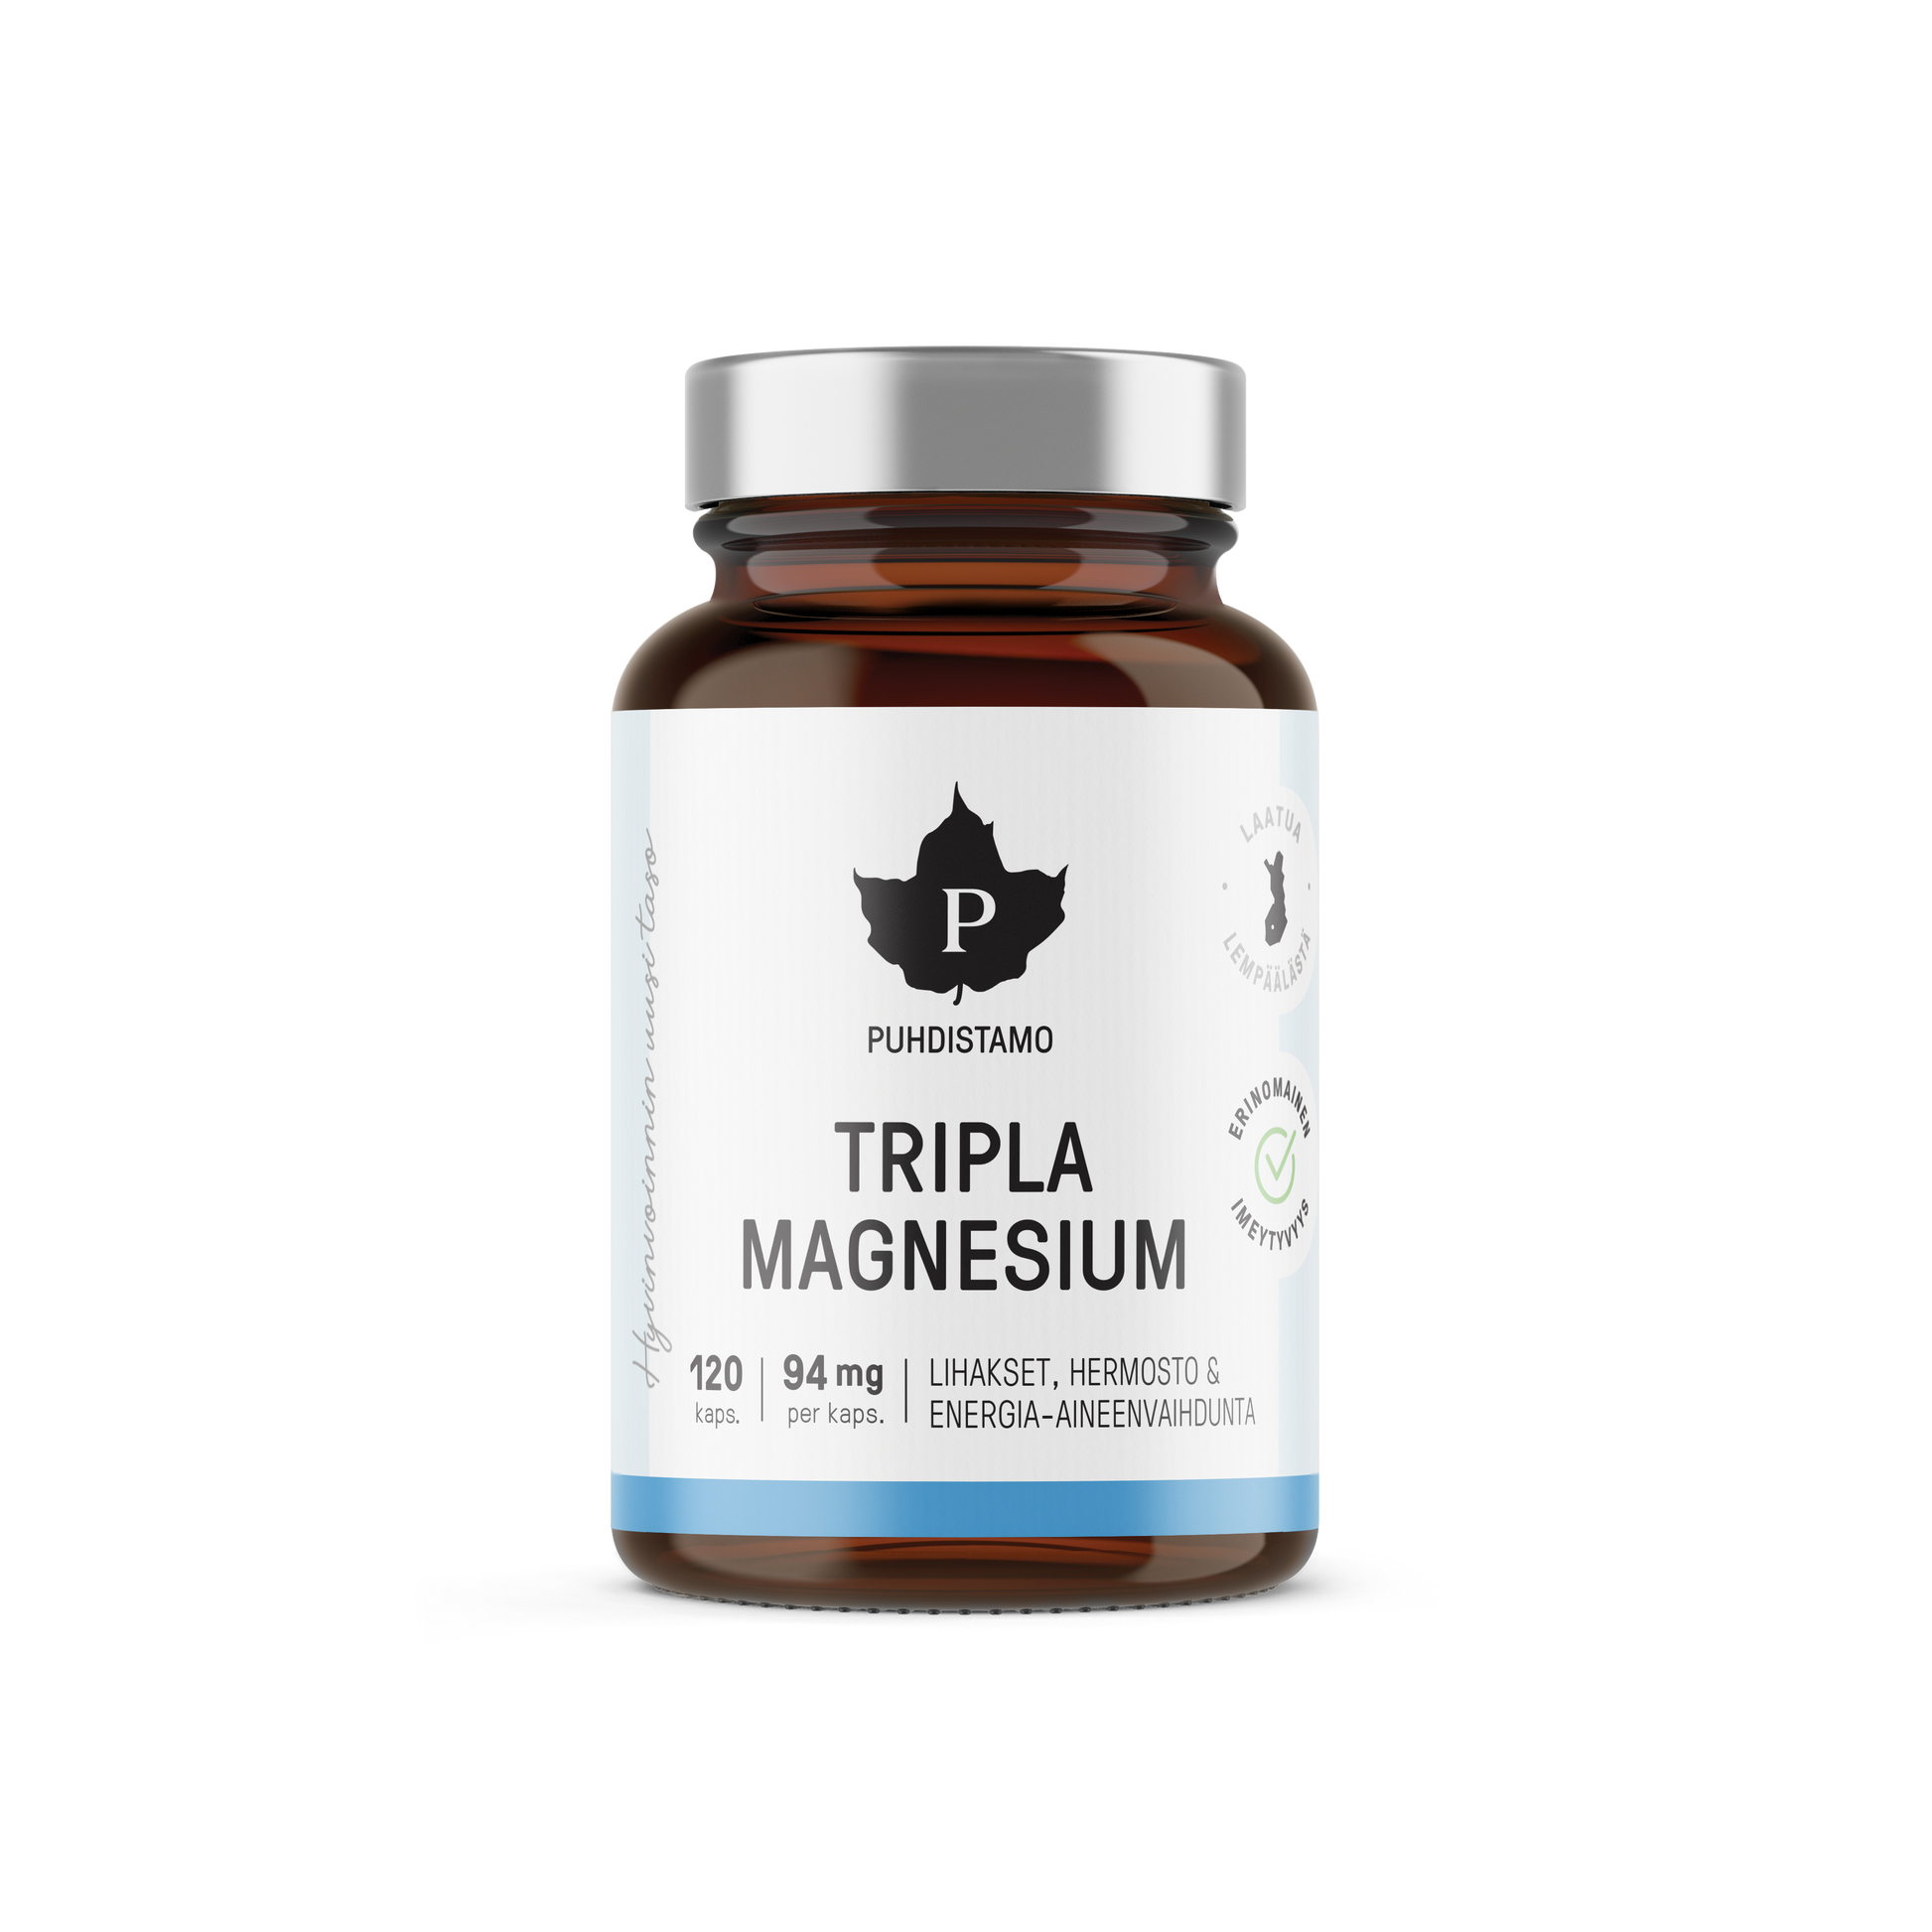 Puhdistamo Tripla Magnesium 120 kapselia - w2w terveys ja hyvinvointi